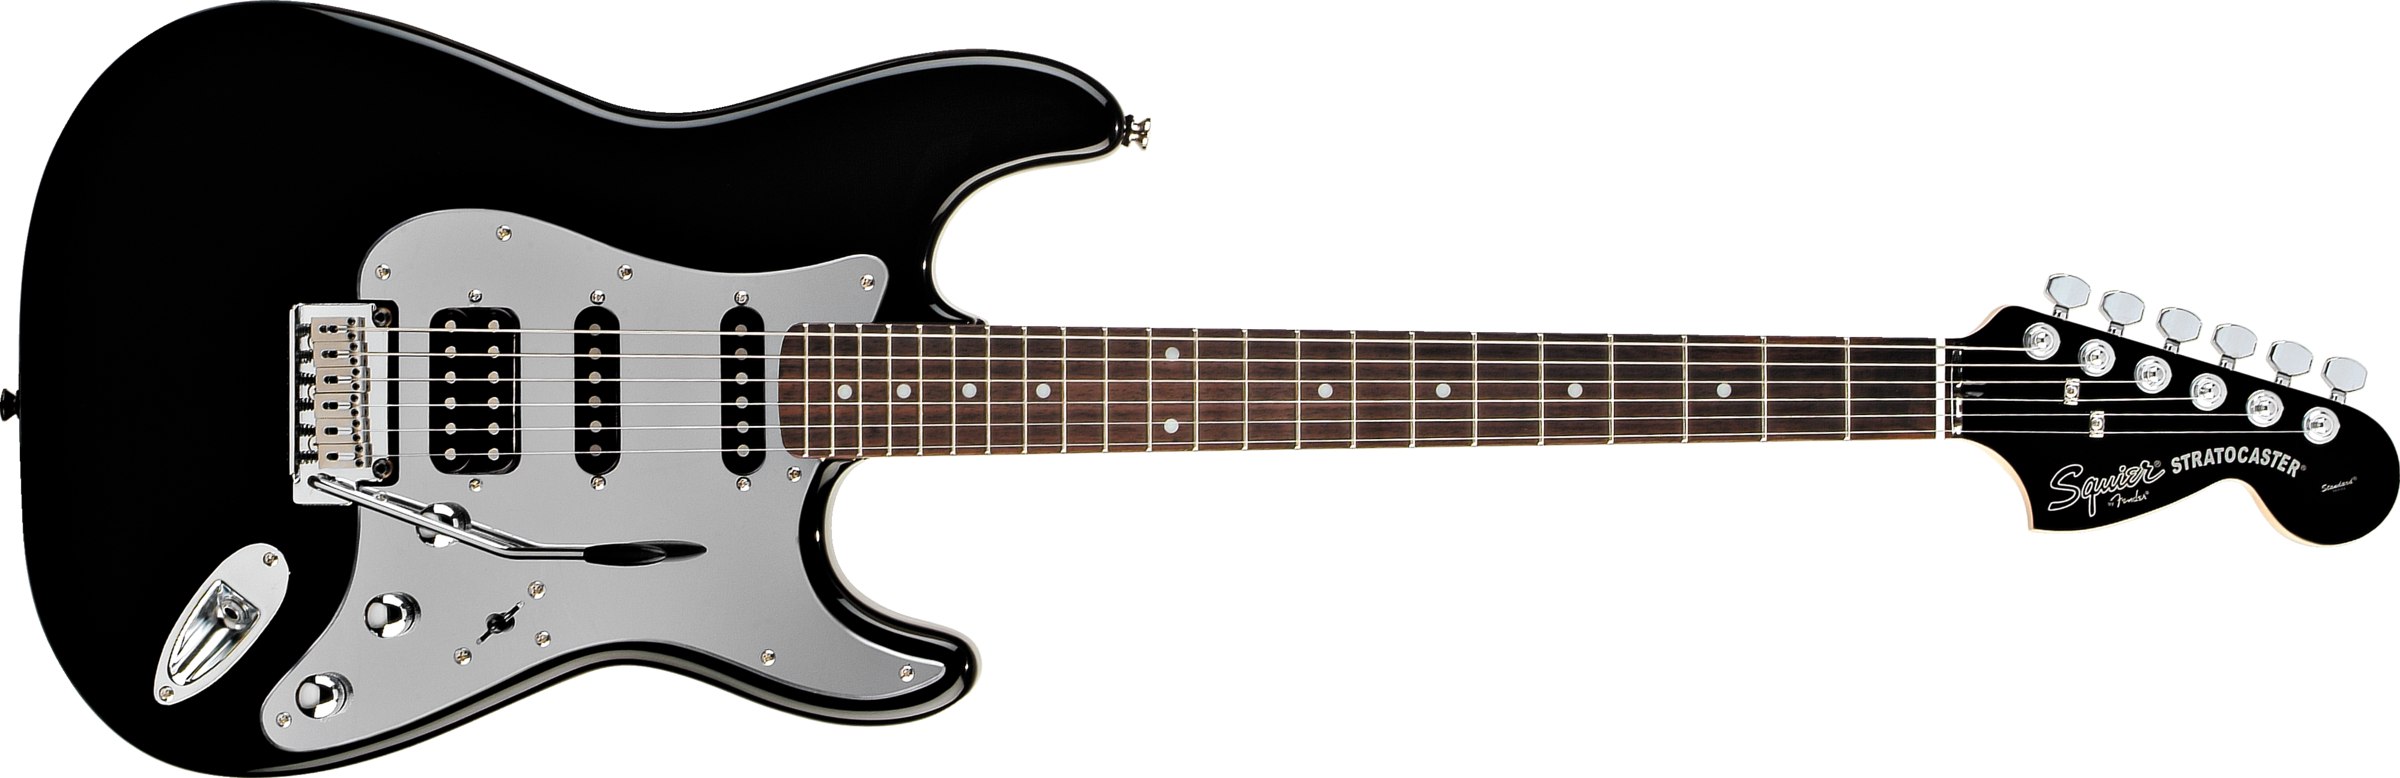 E-guitar PNG Télécharger limage